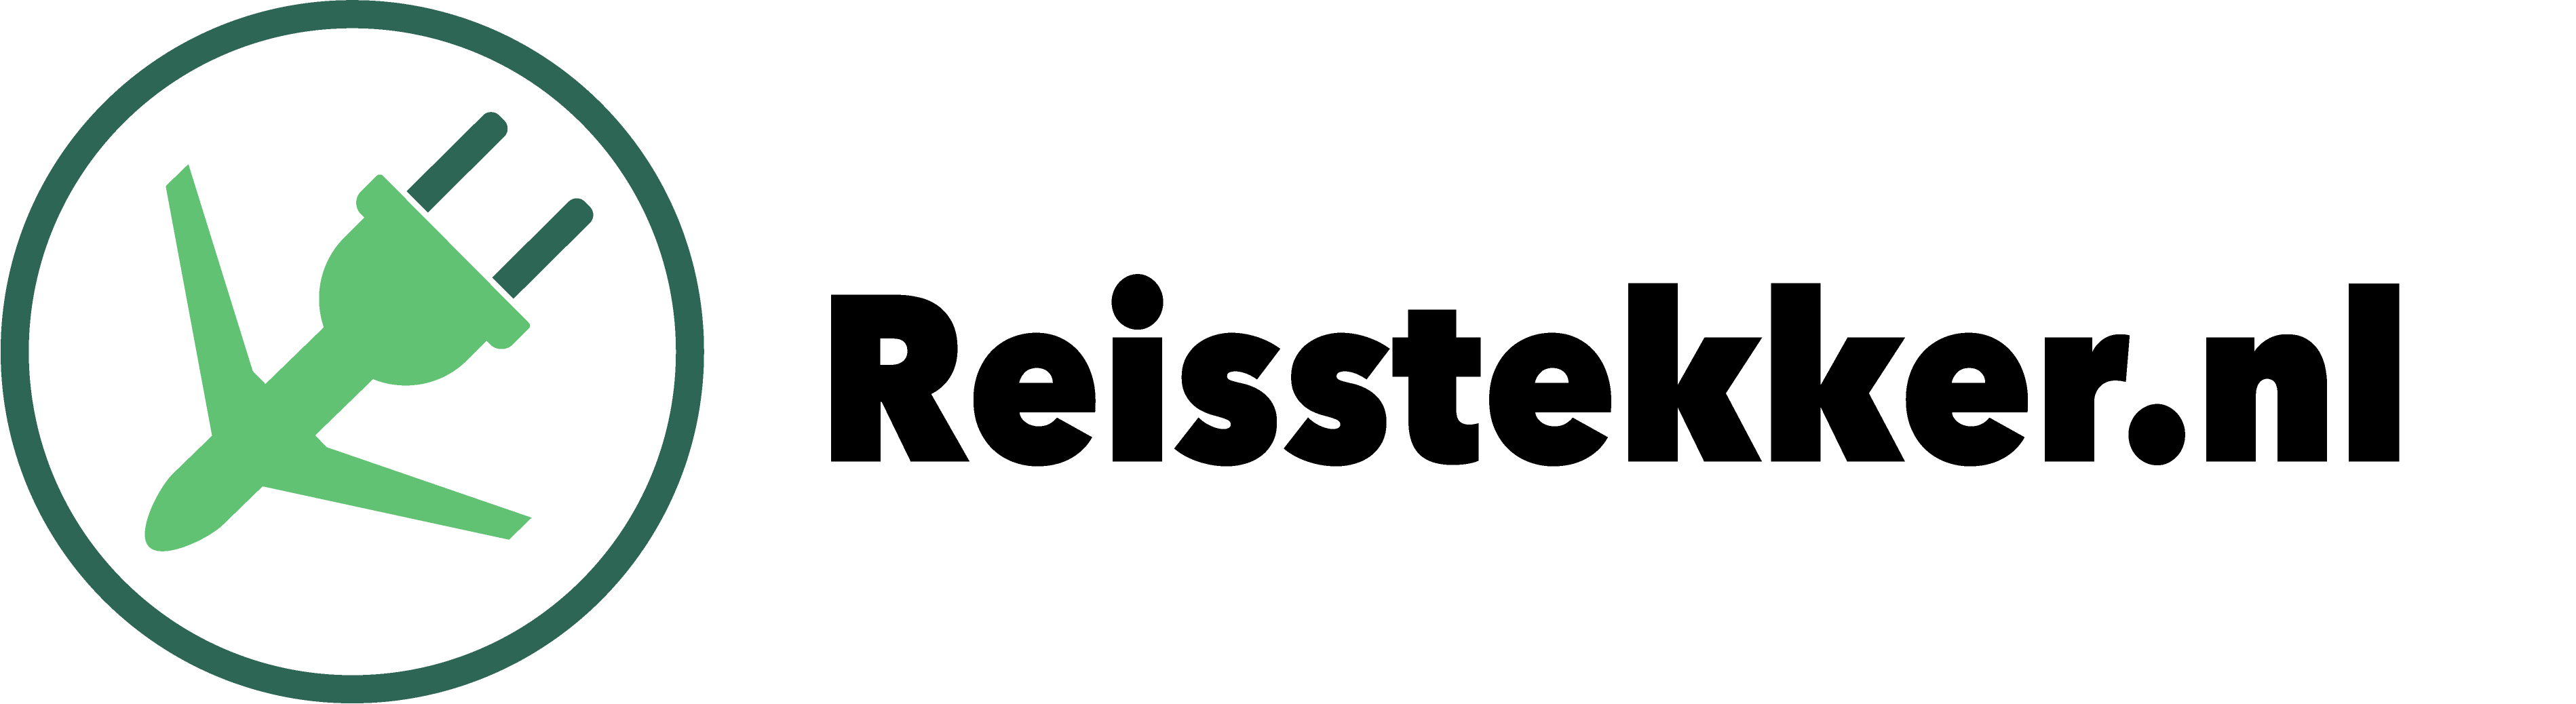 Reistekker logo